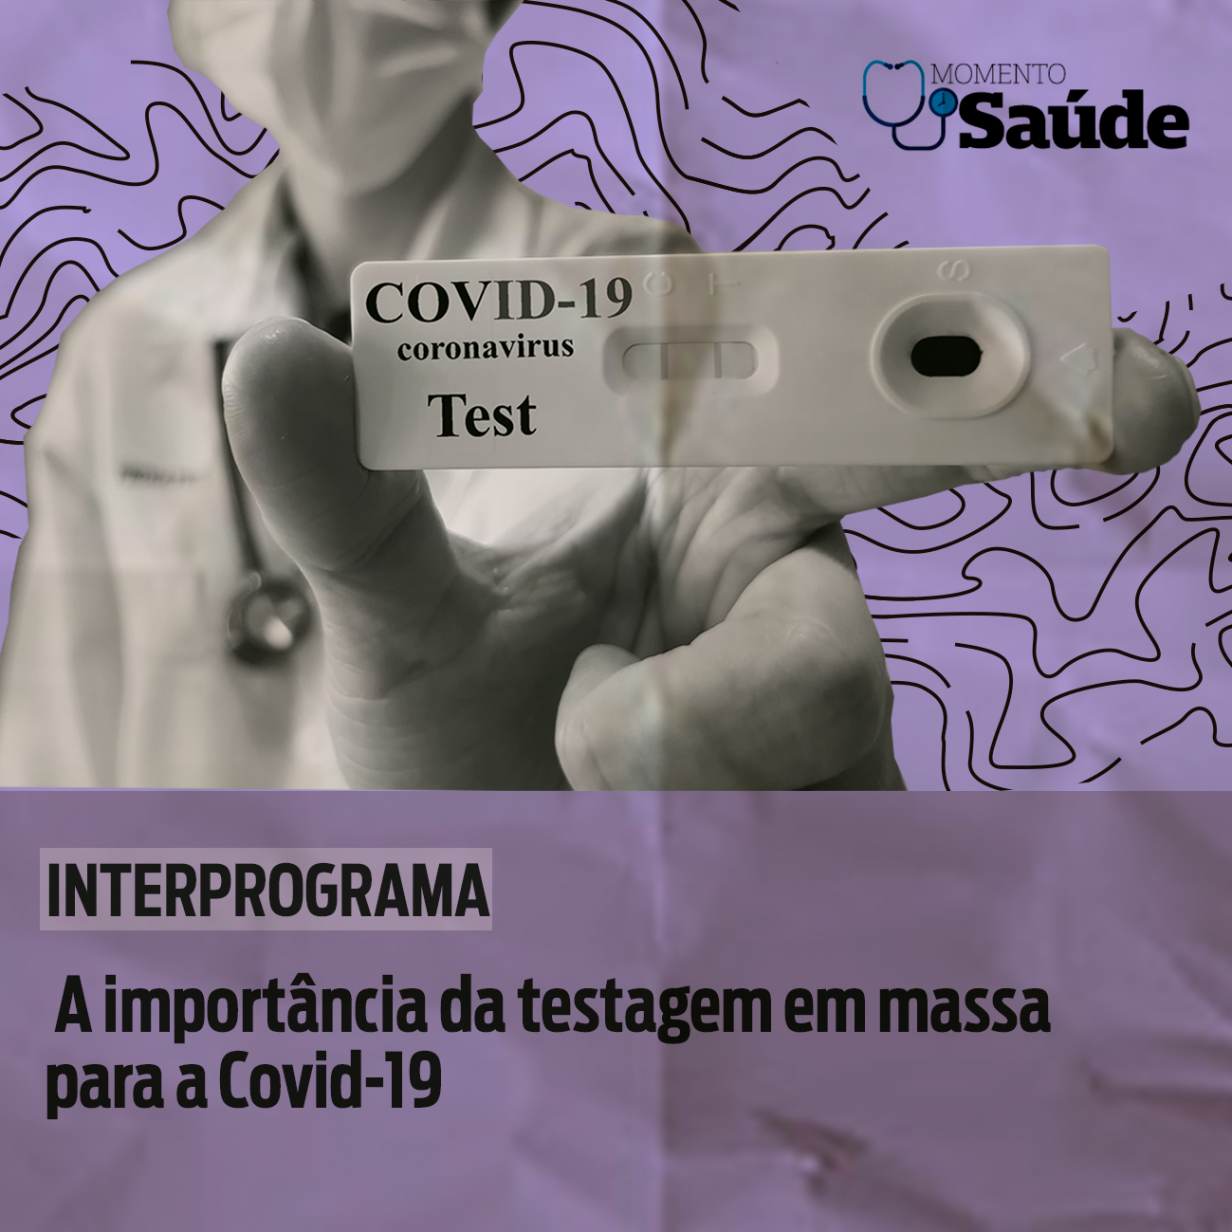 A importância da testagem em massa para a Covid-19